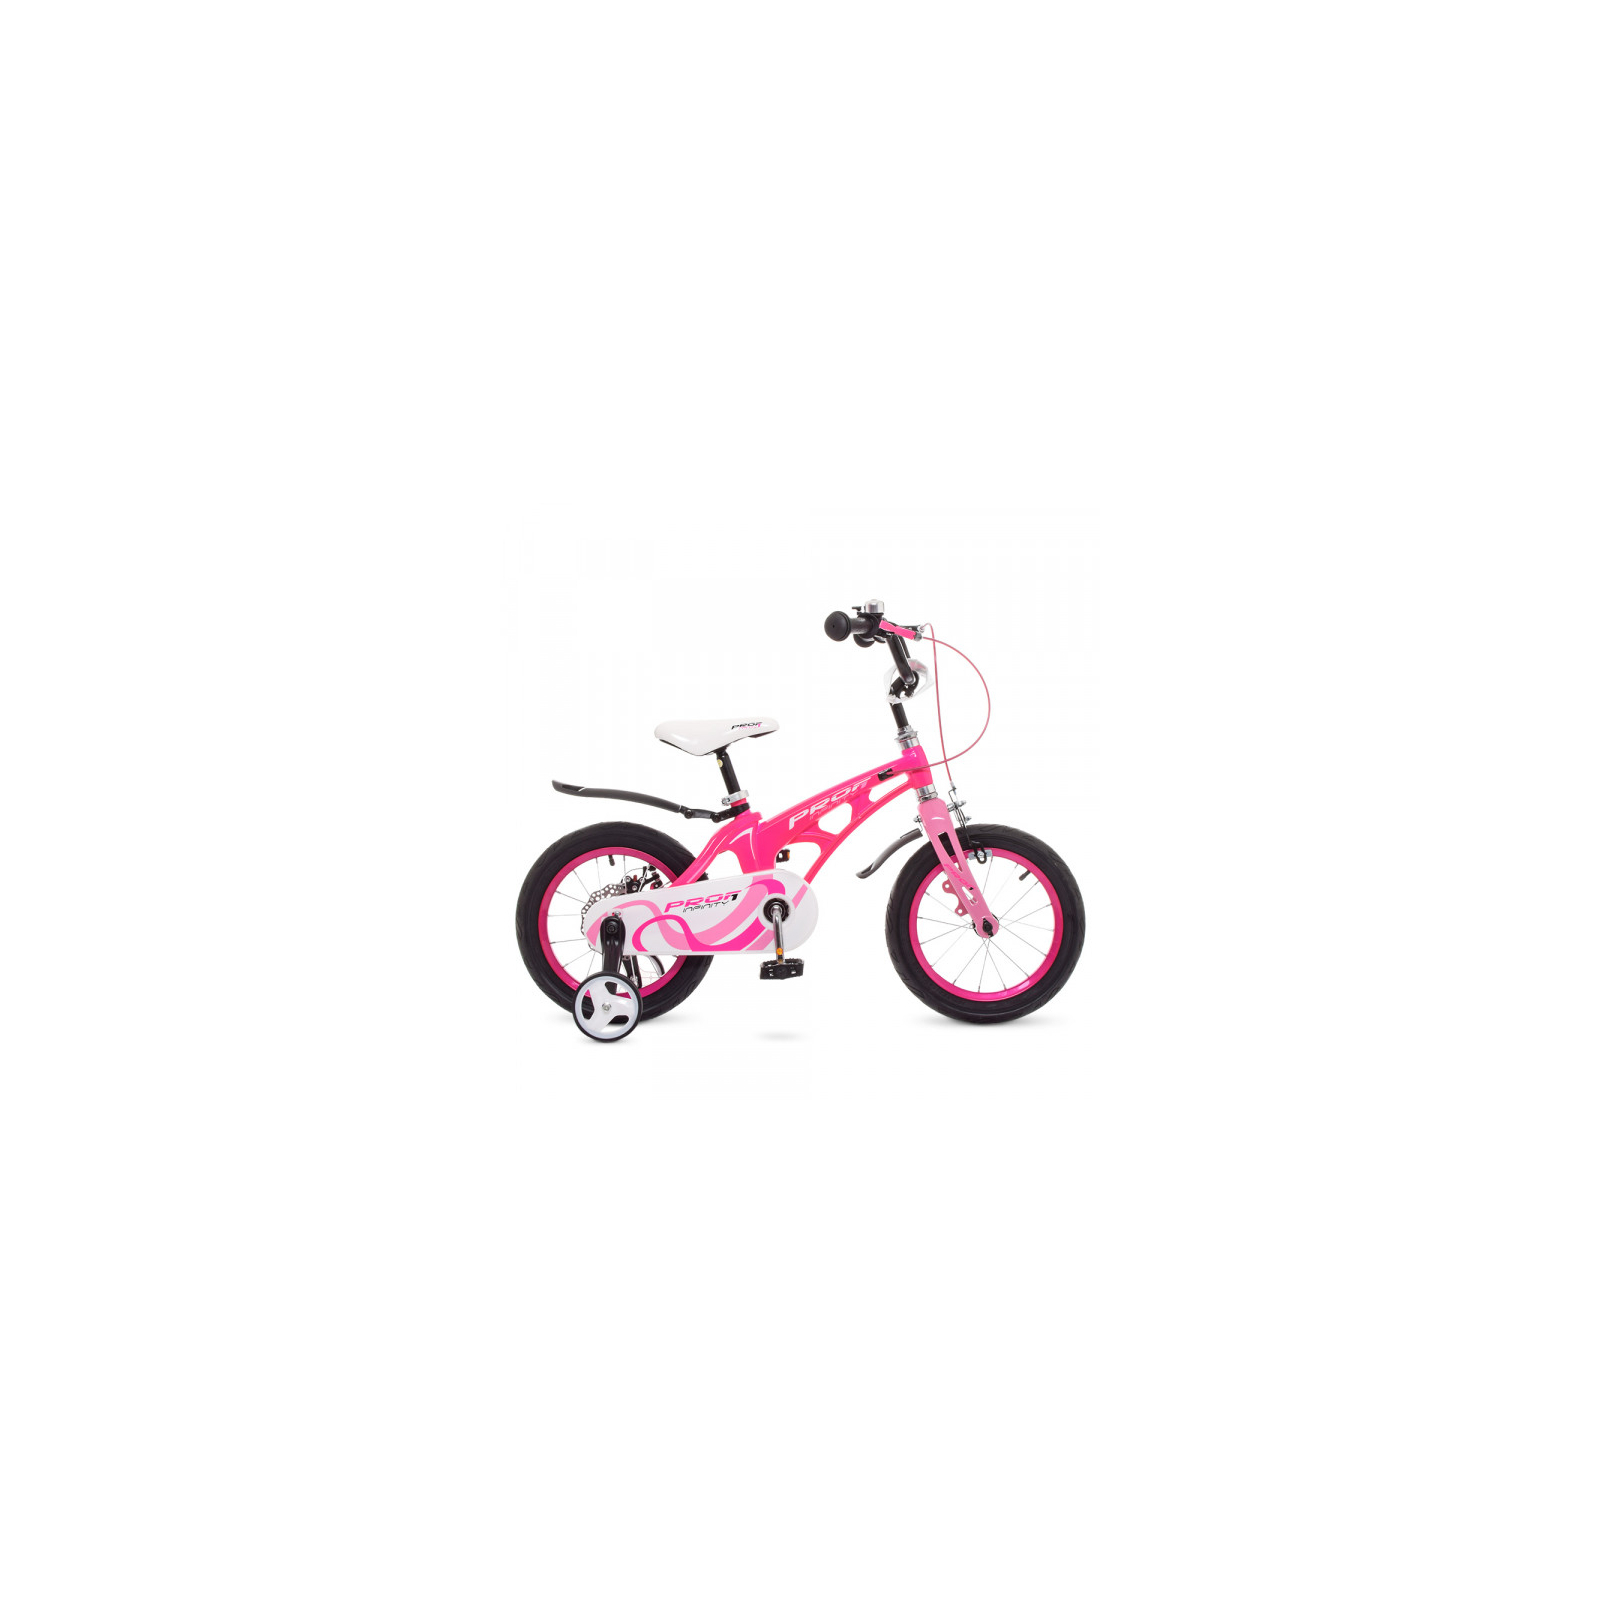 Детский велосипед Prof1 16" Infinity Малиновый/Розовый (LMG16203 crimson/pink) изображение 2